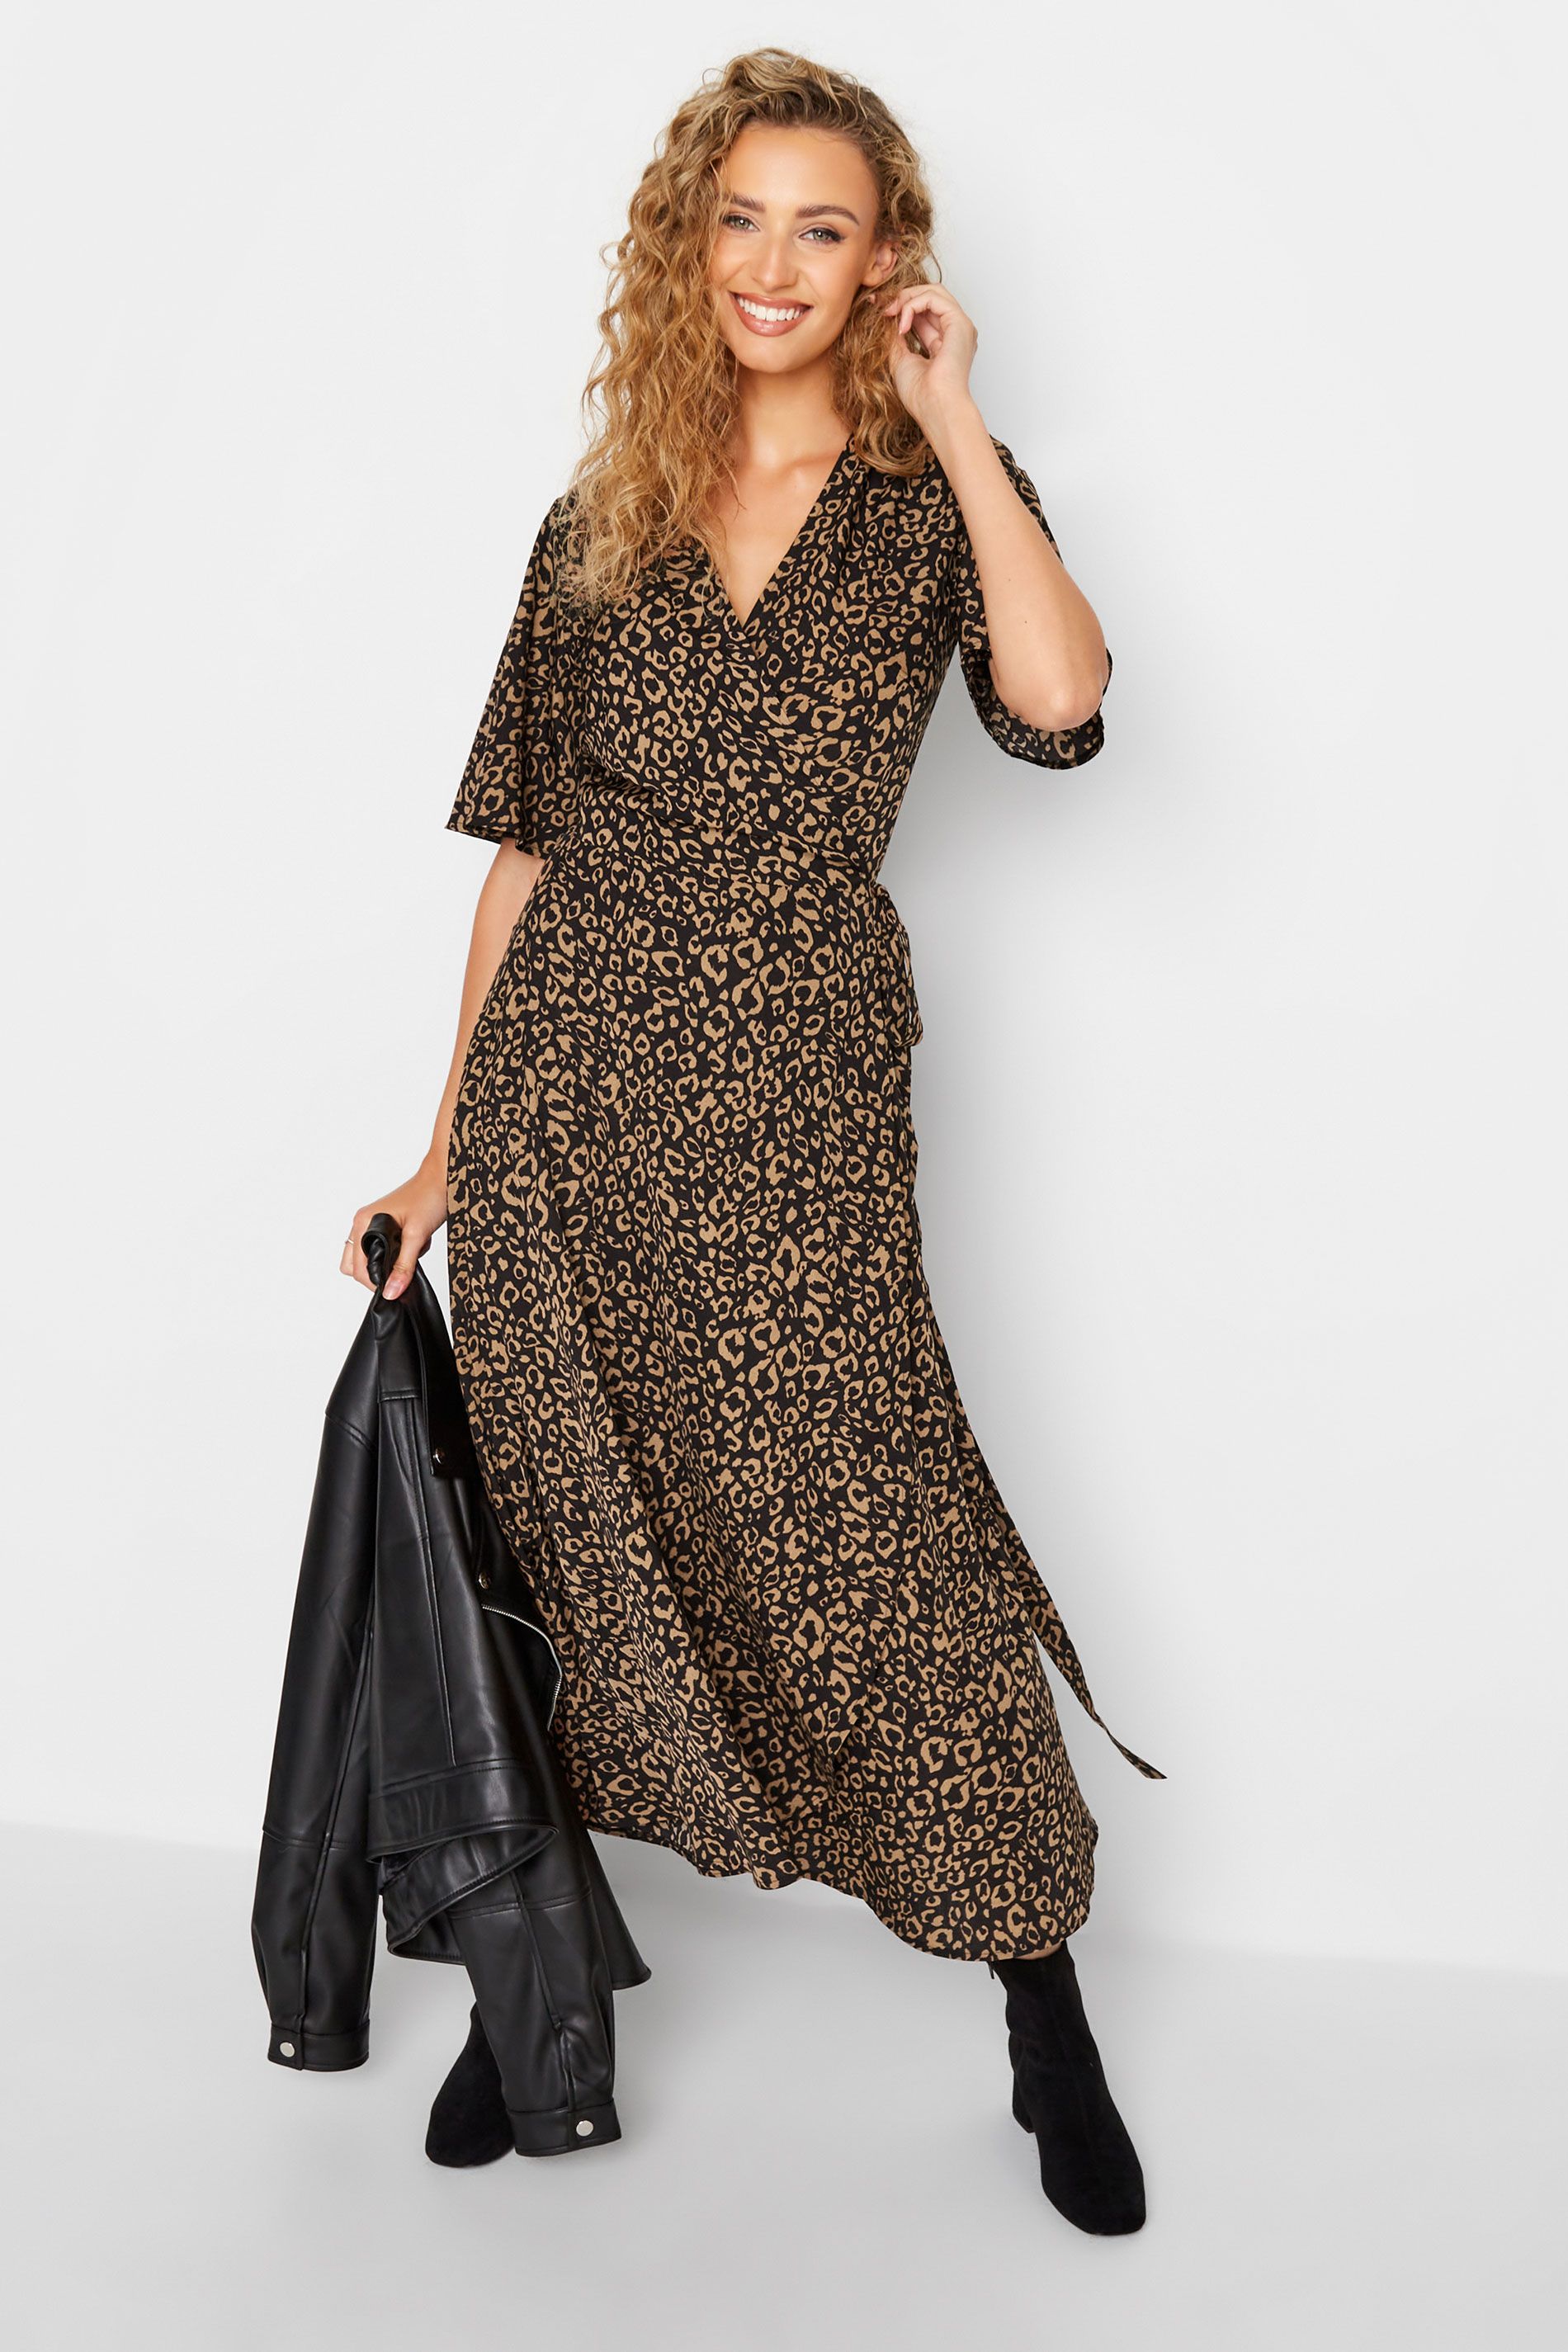 LTS Tall Black Leopard Print Midaxi Wrap Dress | Long Tall Sally